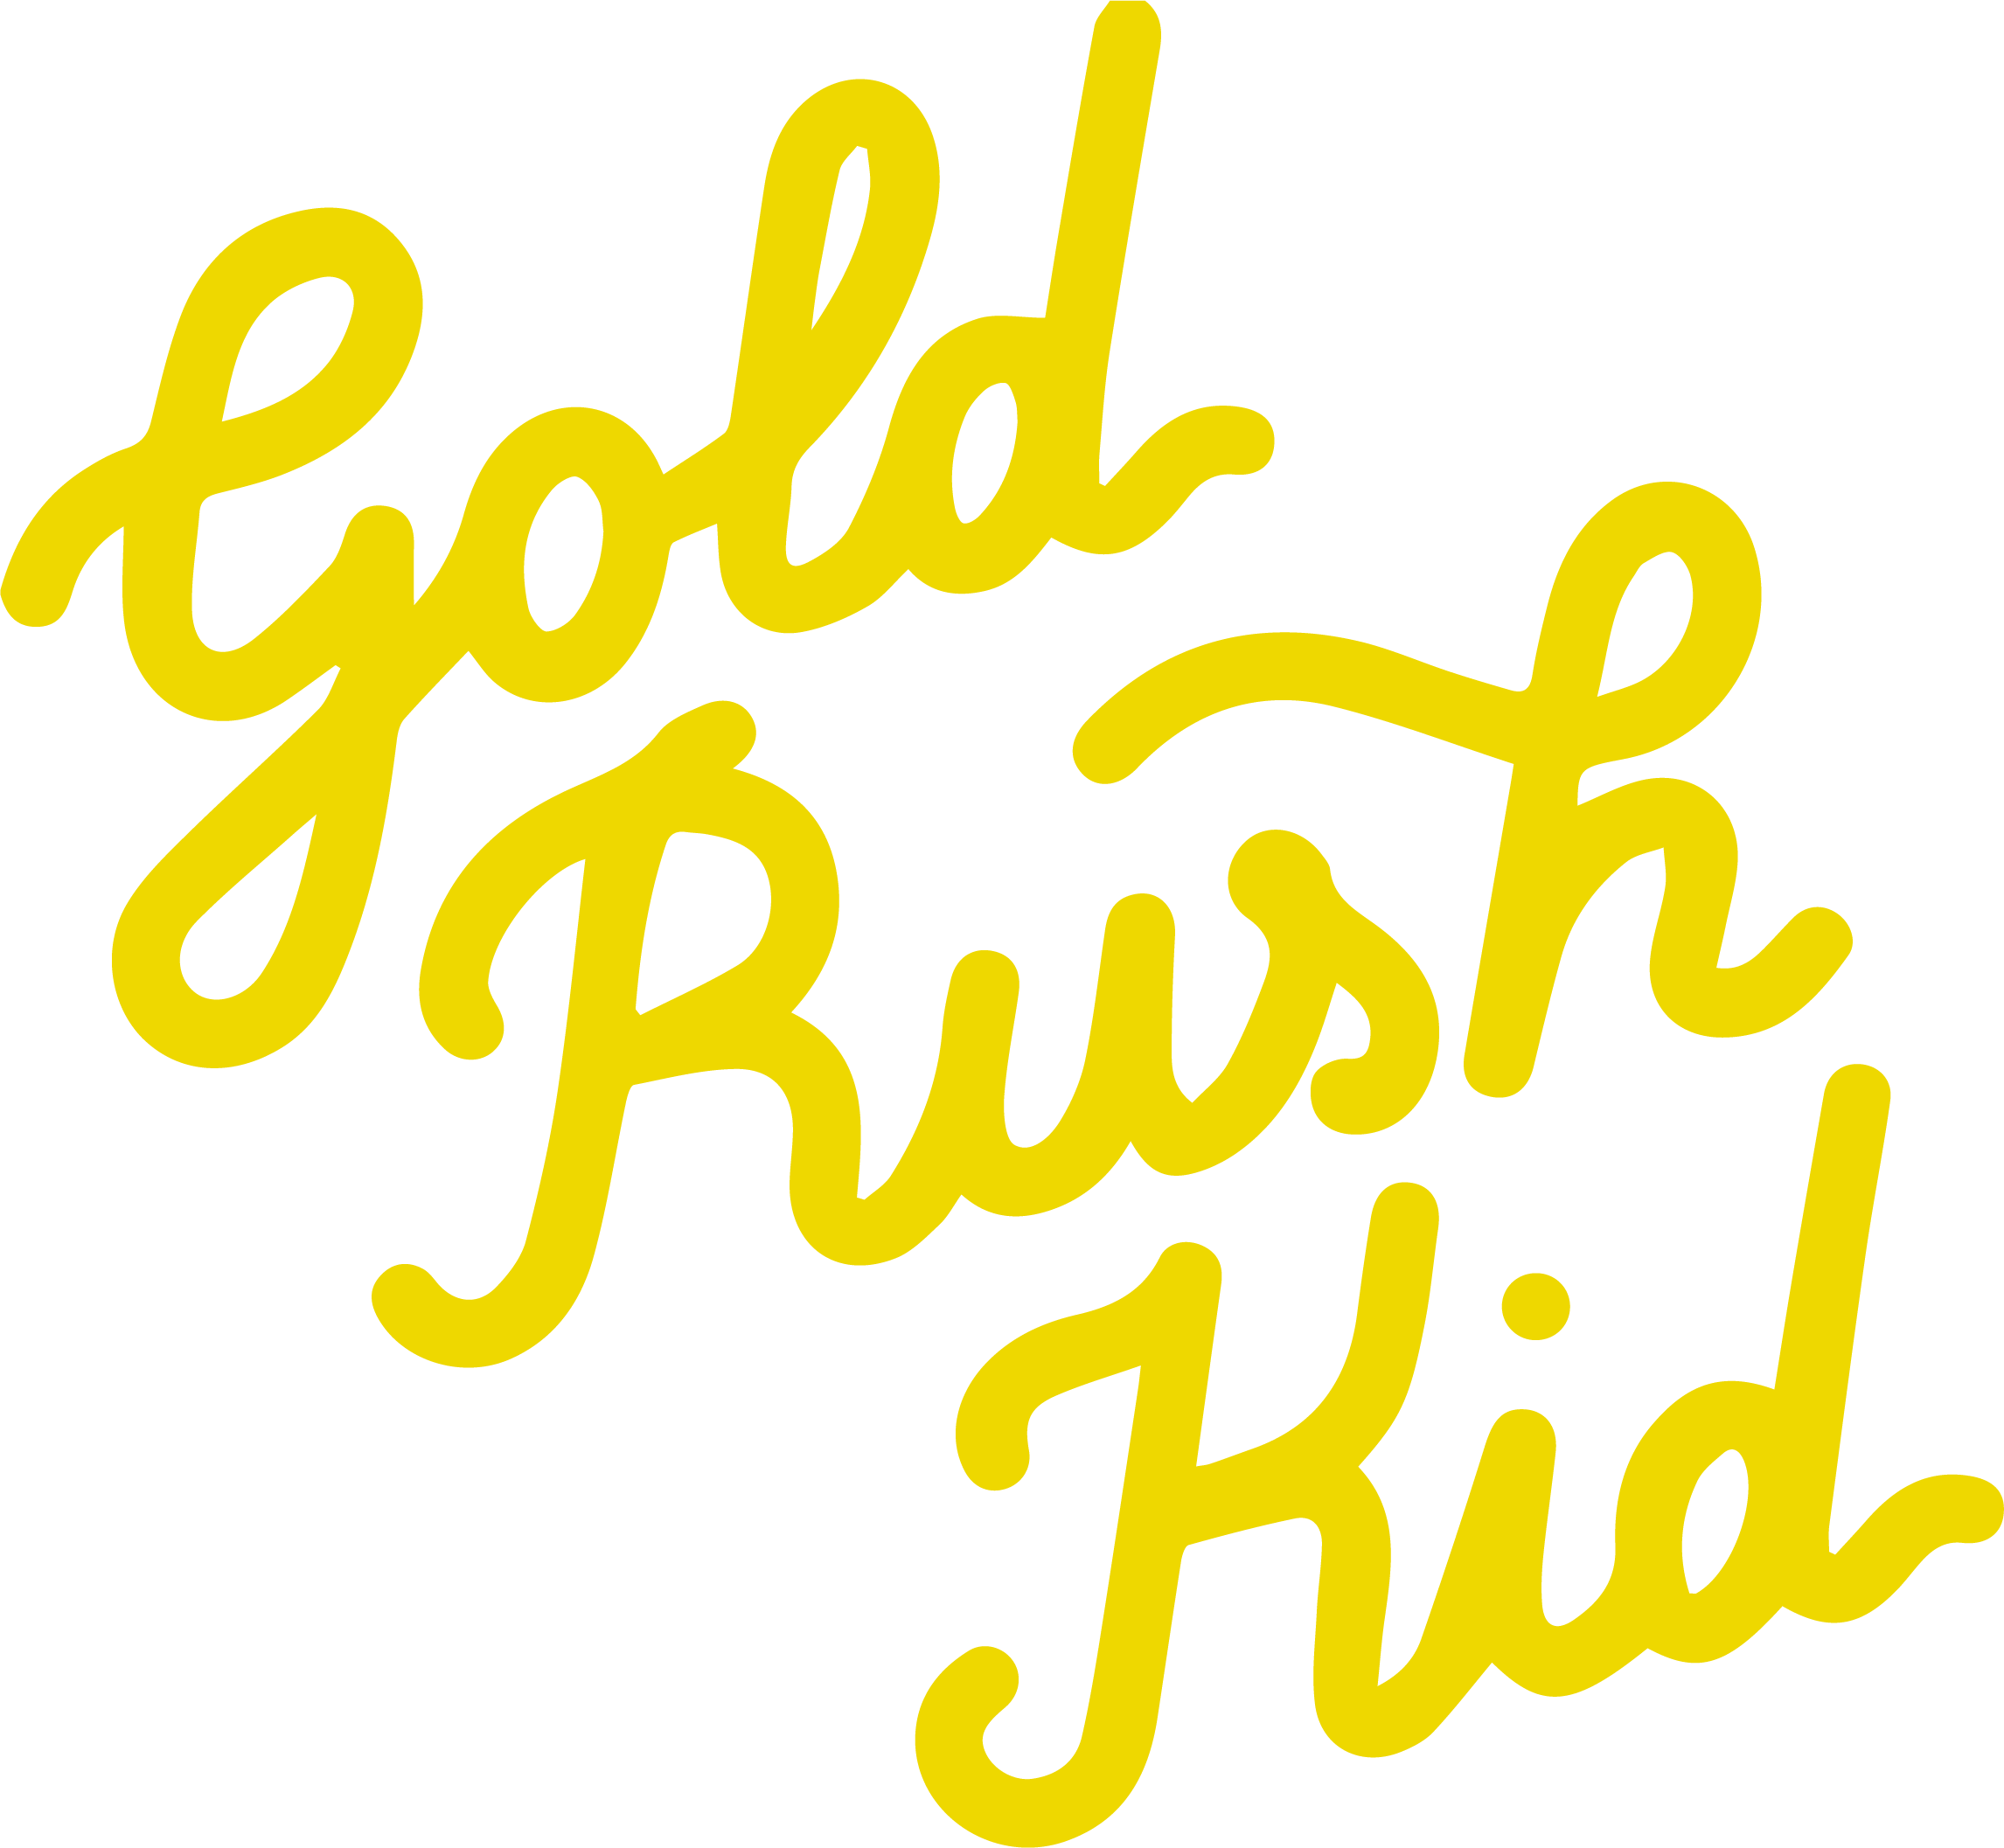 Gold Rush Kid